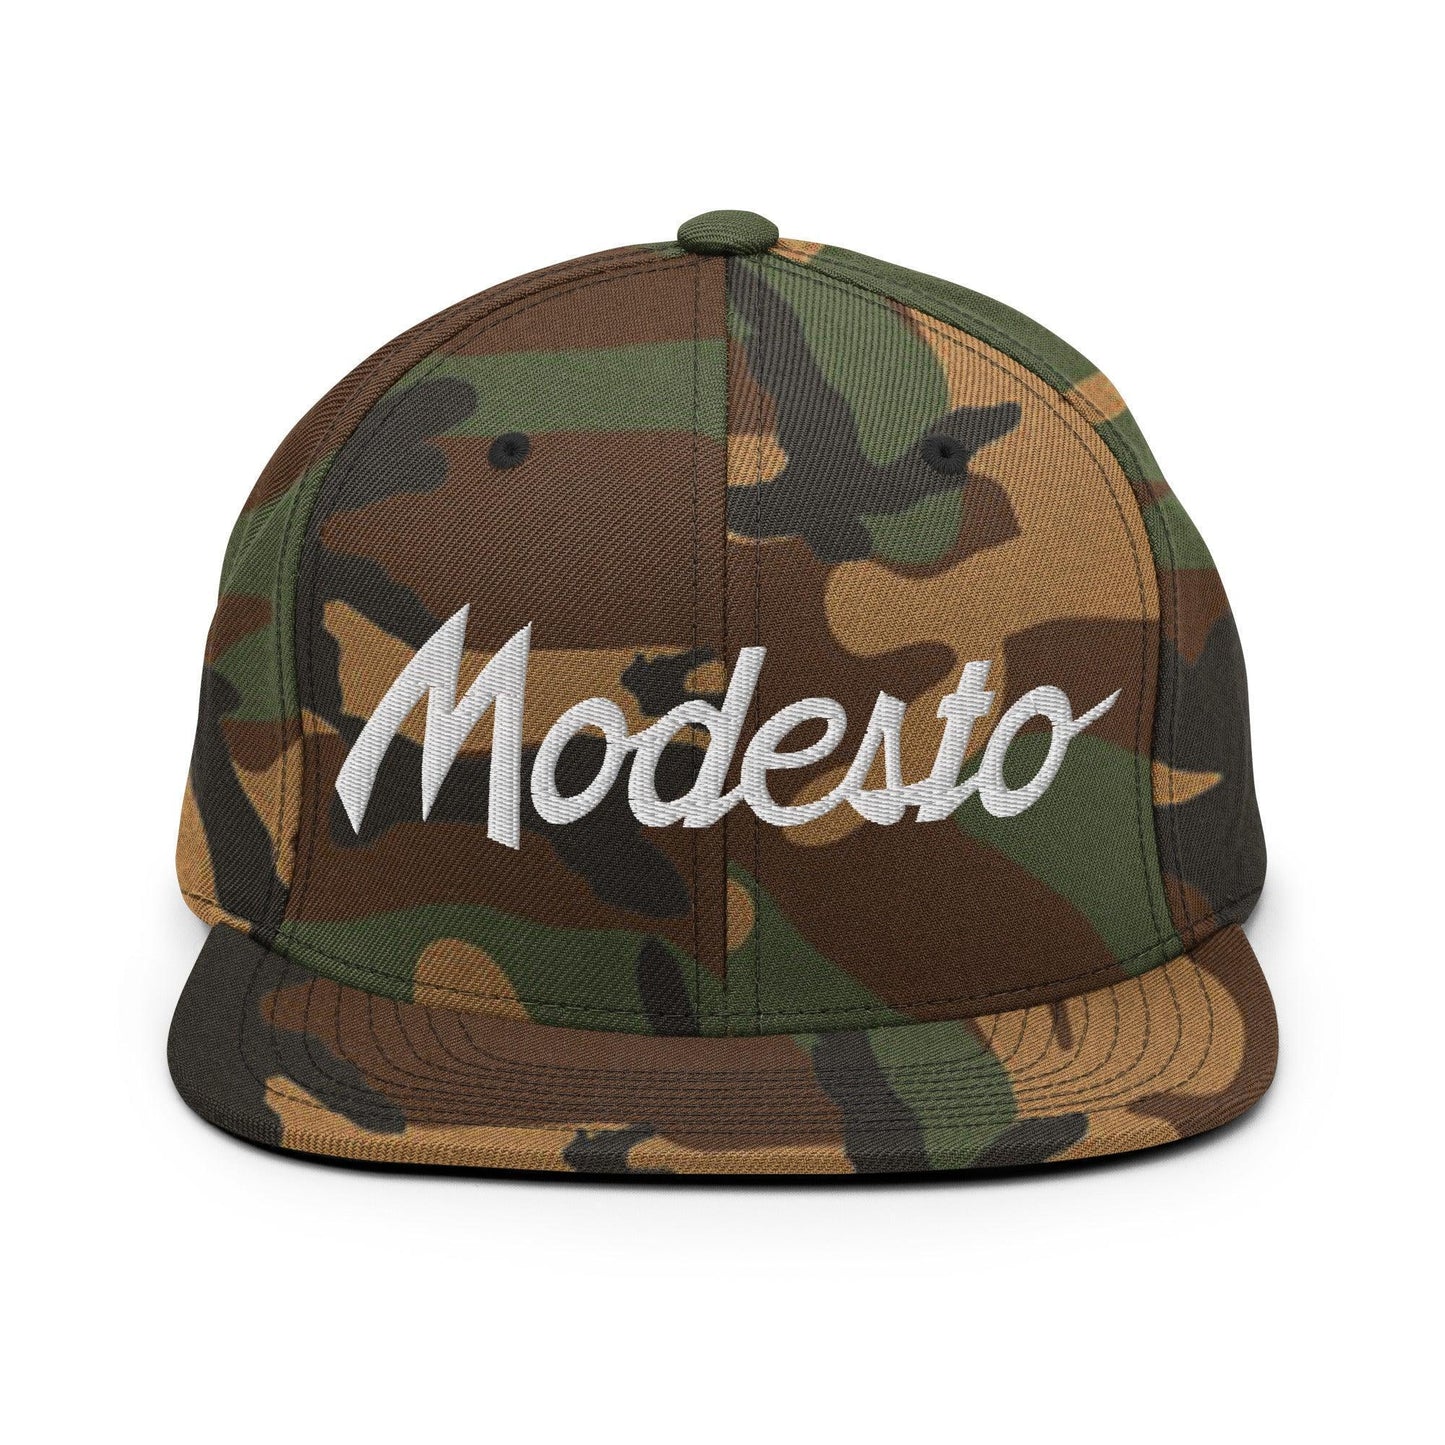 Modesto Script Snapback Hat Green Camo